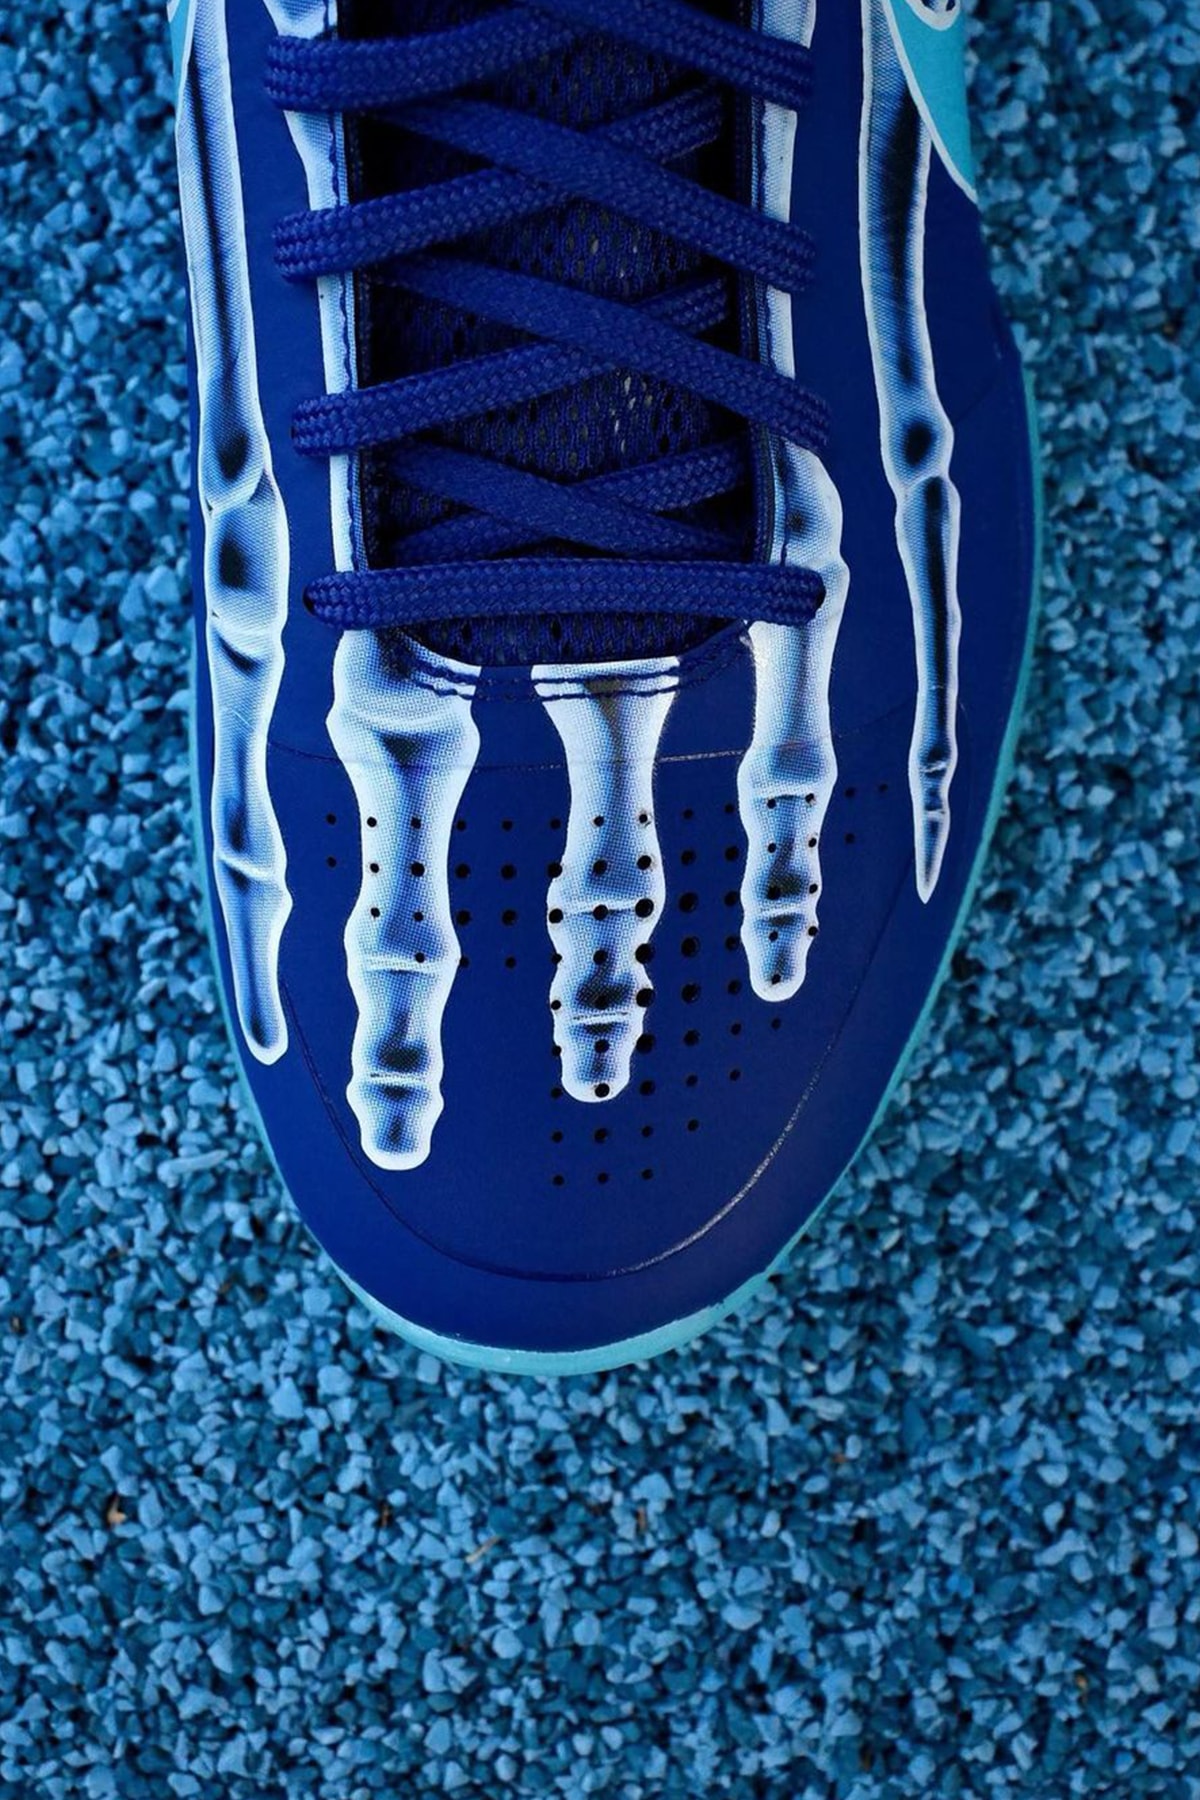 ナイキからコービー・ブライアントのレントゲン写真を用いた Kobe 5 Protro “X-Ray” がスタンバイ Nike Kobe 5 Protro “X-Ray” first look, VANESSA BRYANT